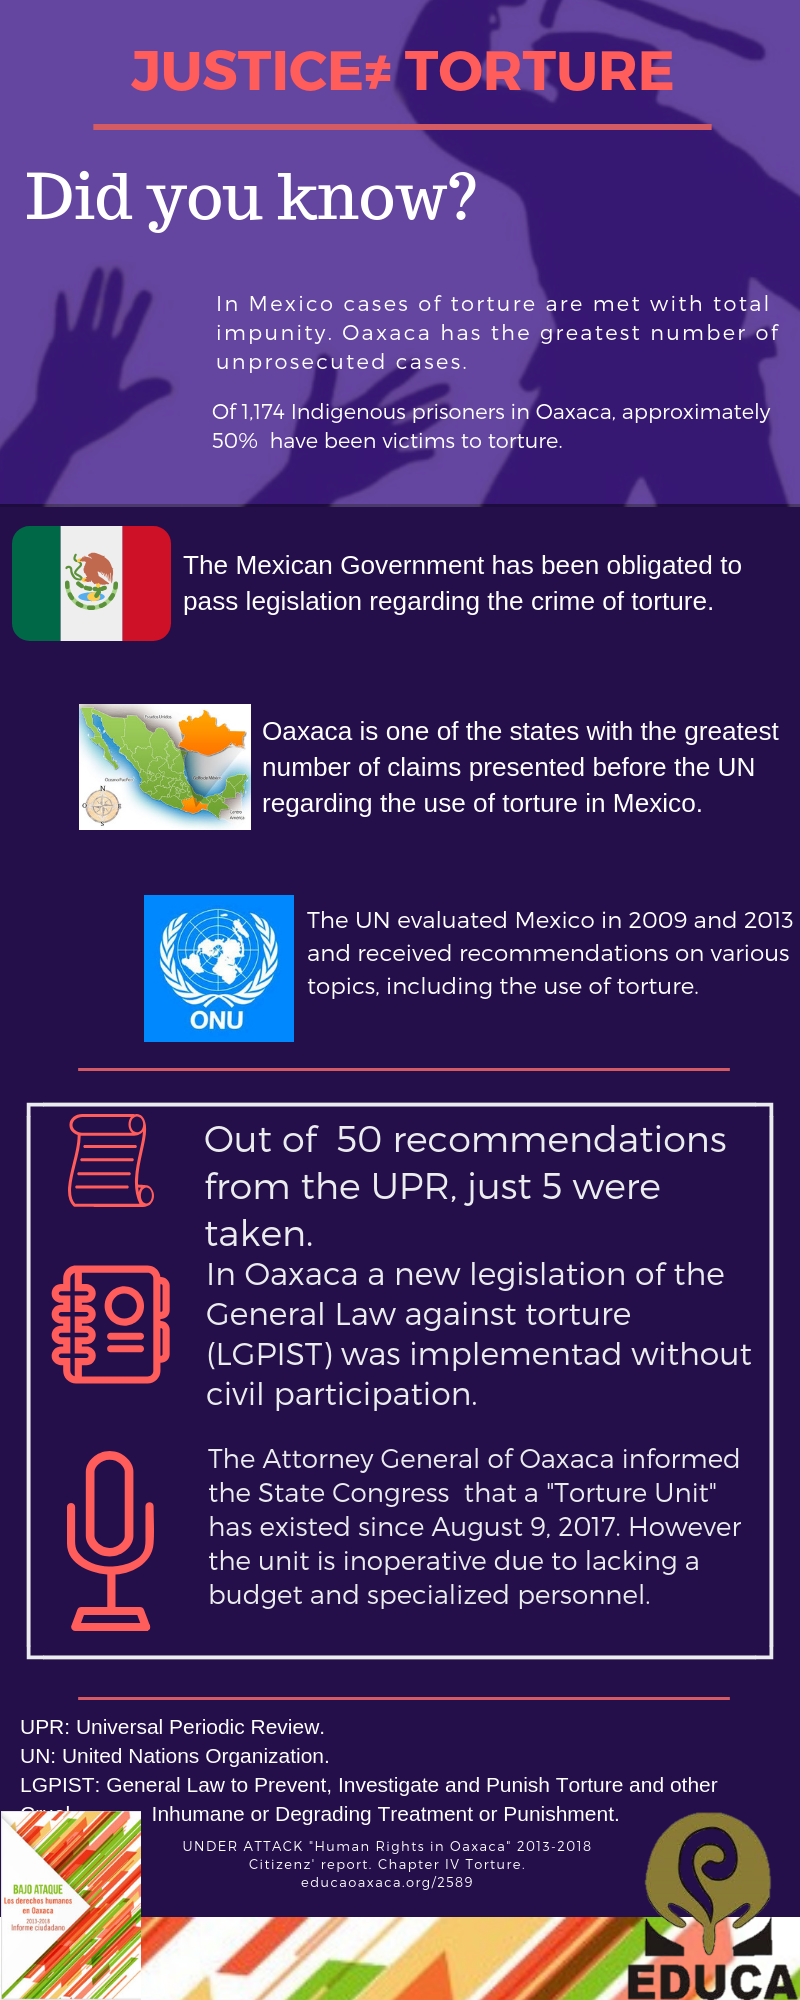 BAJO ATAQUE Los derechos humanos en Oaxaca 2013 2018 Informe ciudadano